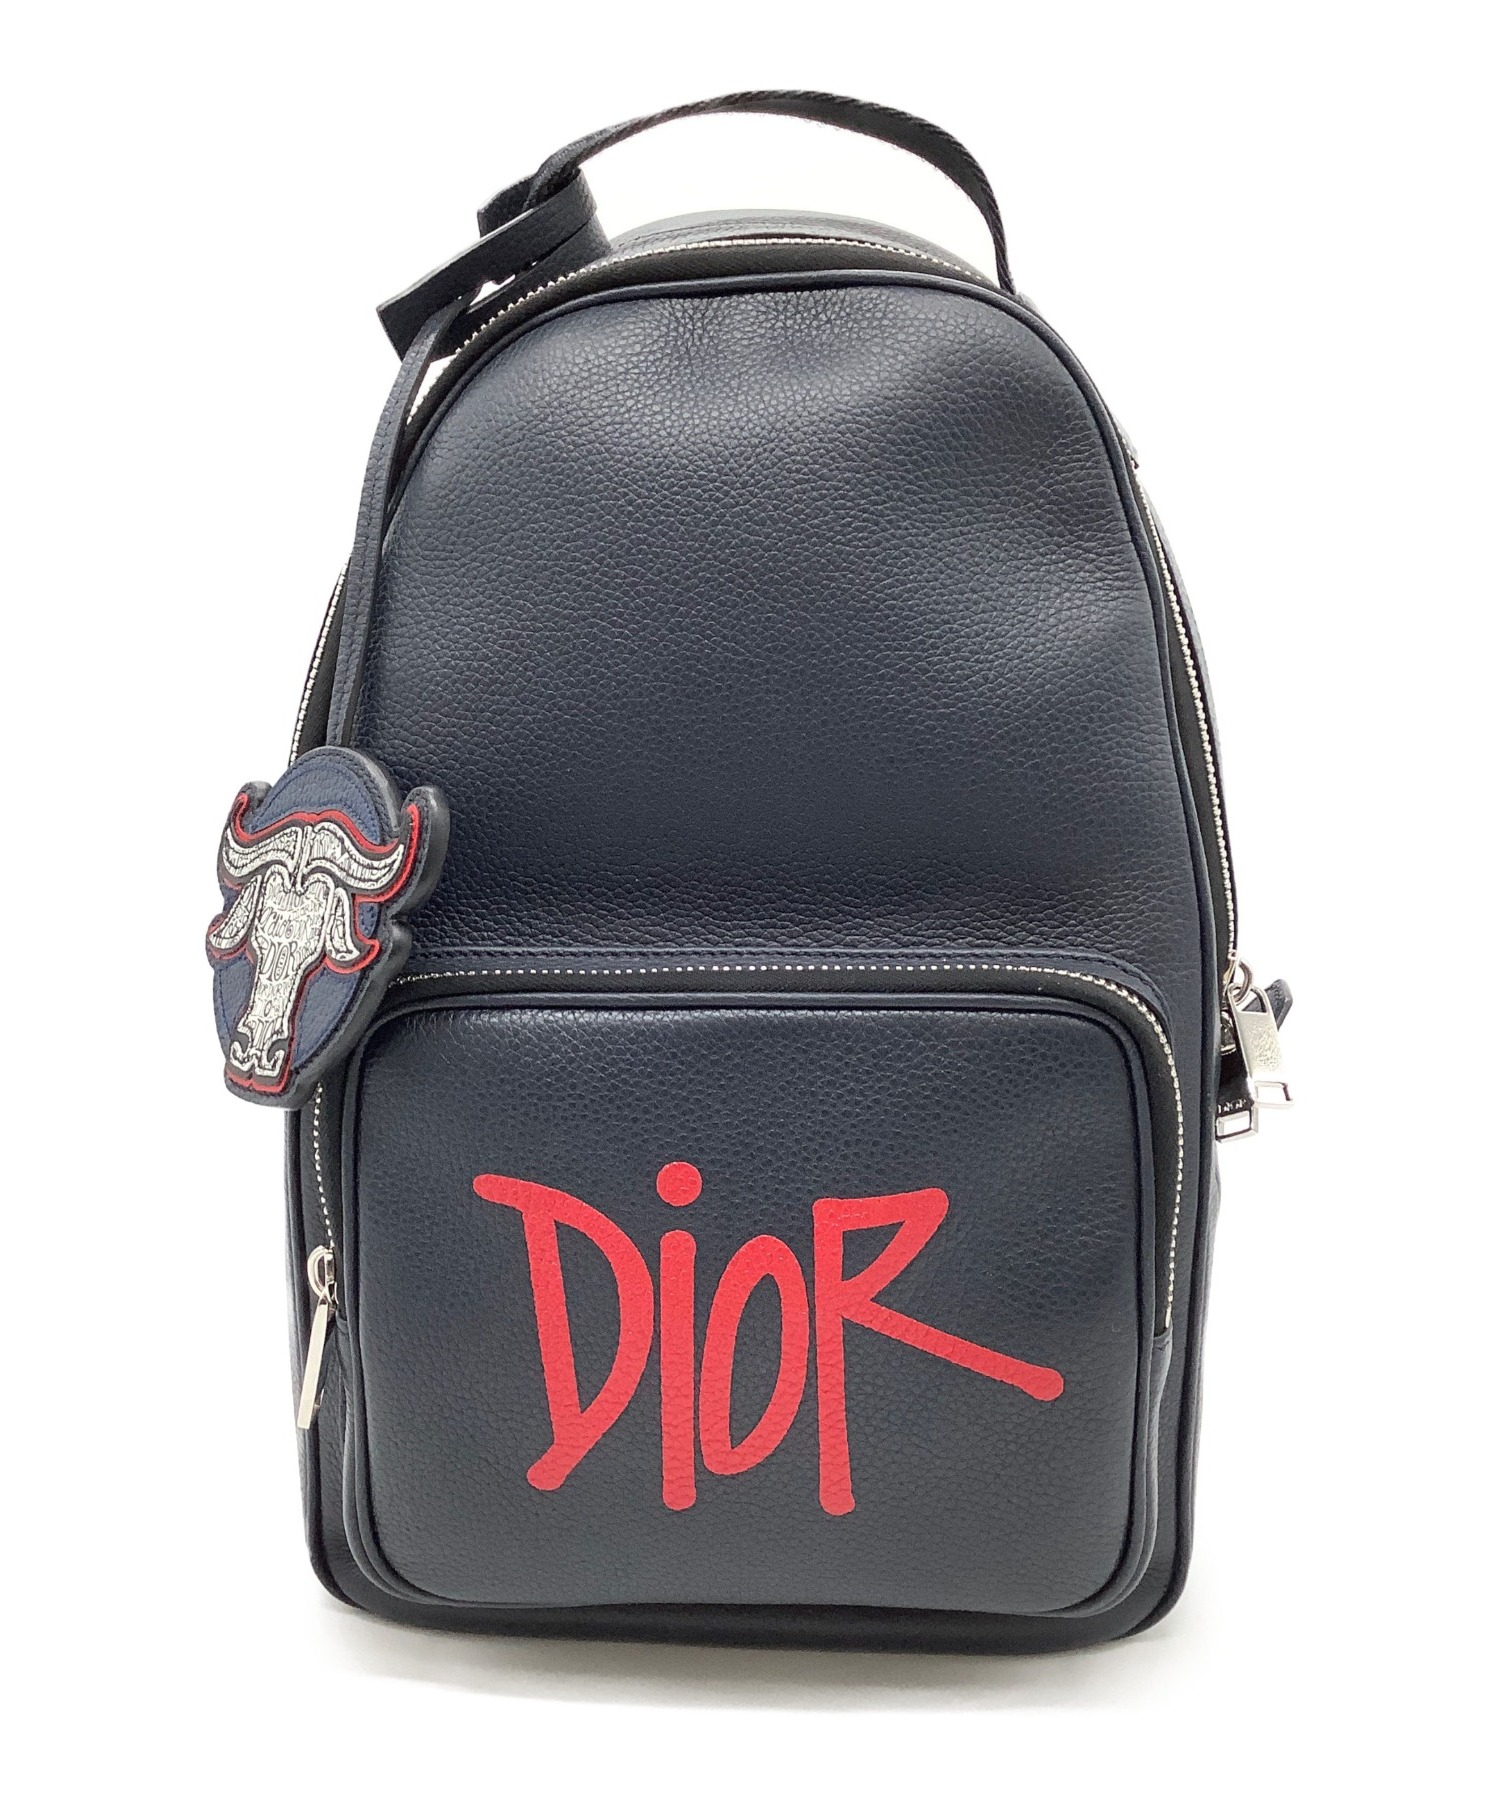 Christian Dior (クリスチャン ディオール) クロスボディバッグ ネイビー